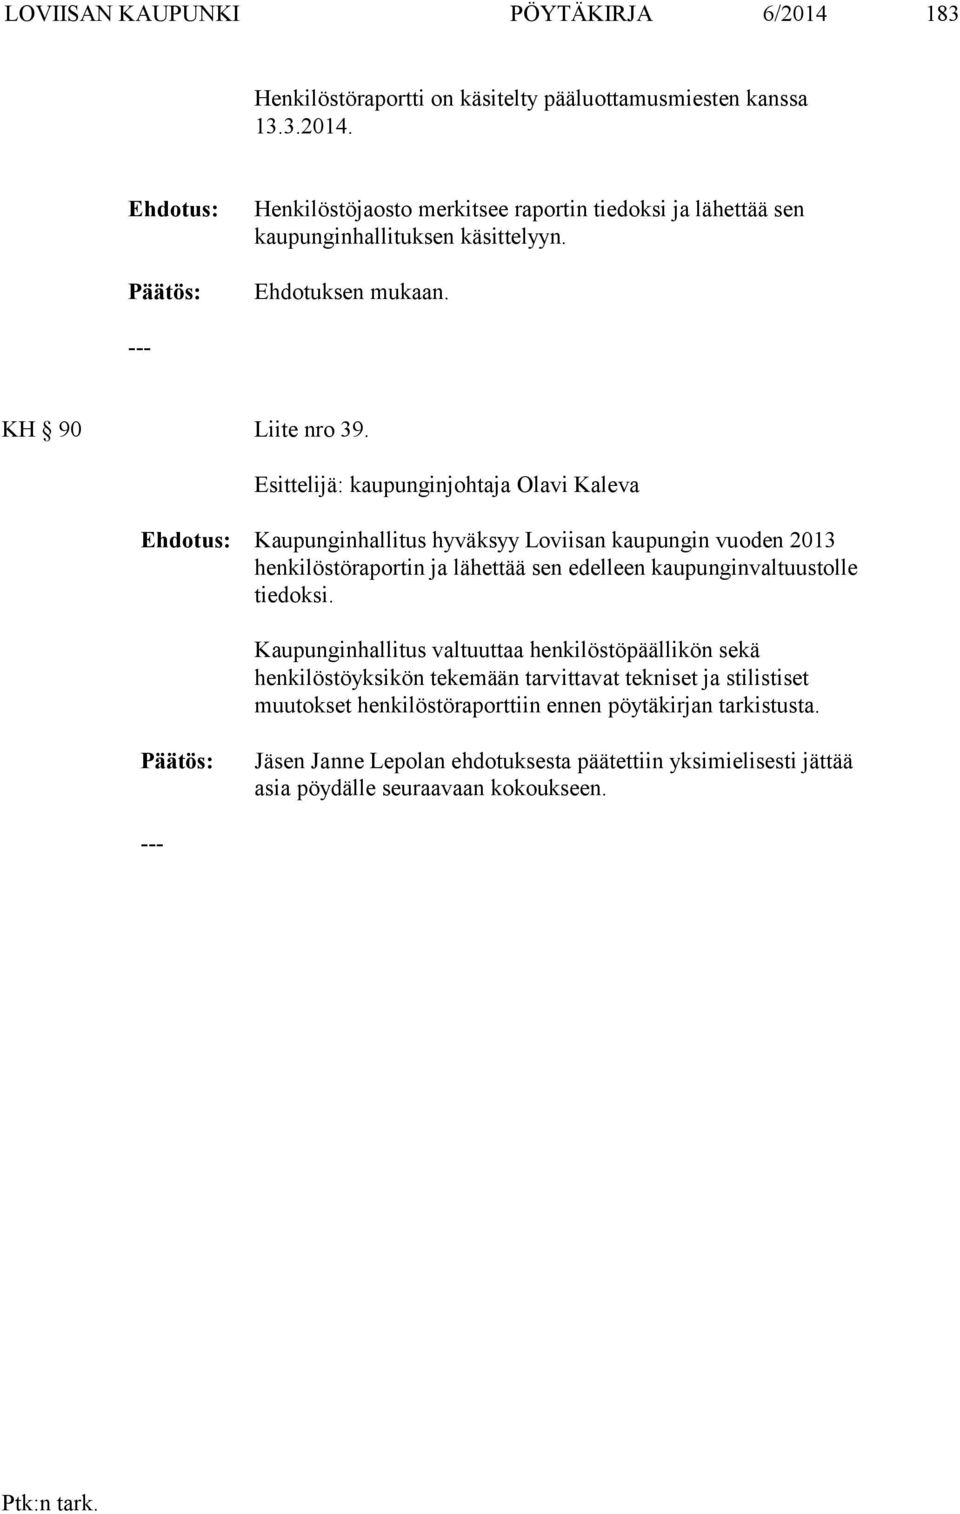 Esittelijä: kaupunginjohtaja Olavi Kaleva Ehdotus: Kaupunginhallitus hyväksyy Loviisan kaupungin vuoden 2013 henkilöstöraportin ja lähettää sen edelleen kaupunginvaltuustolle